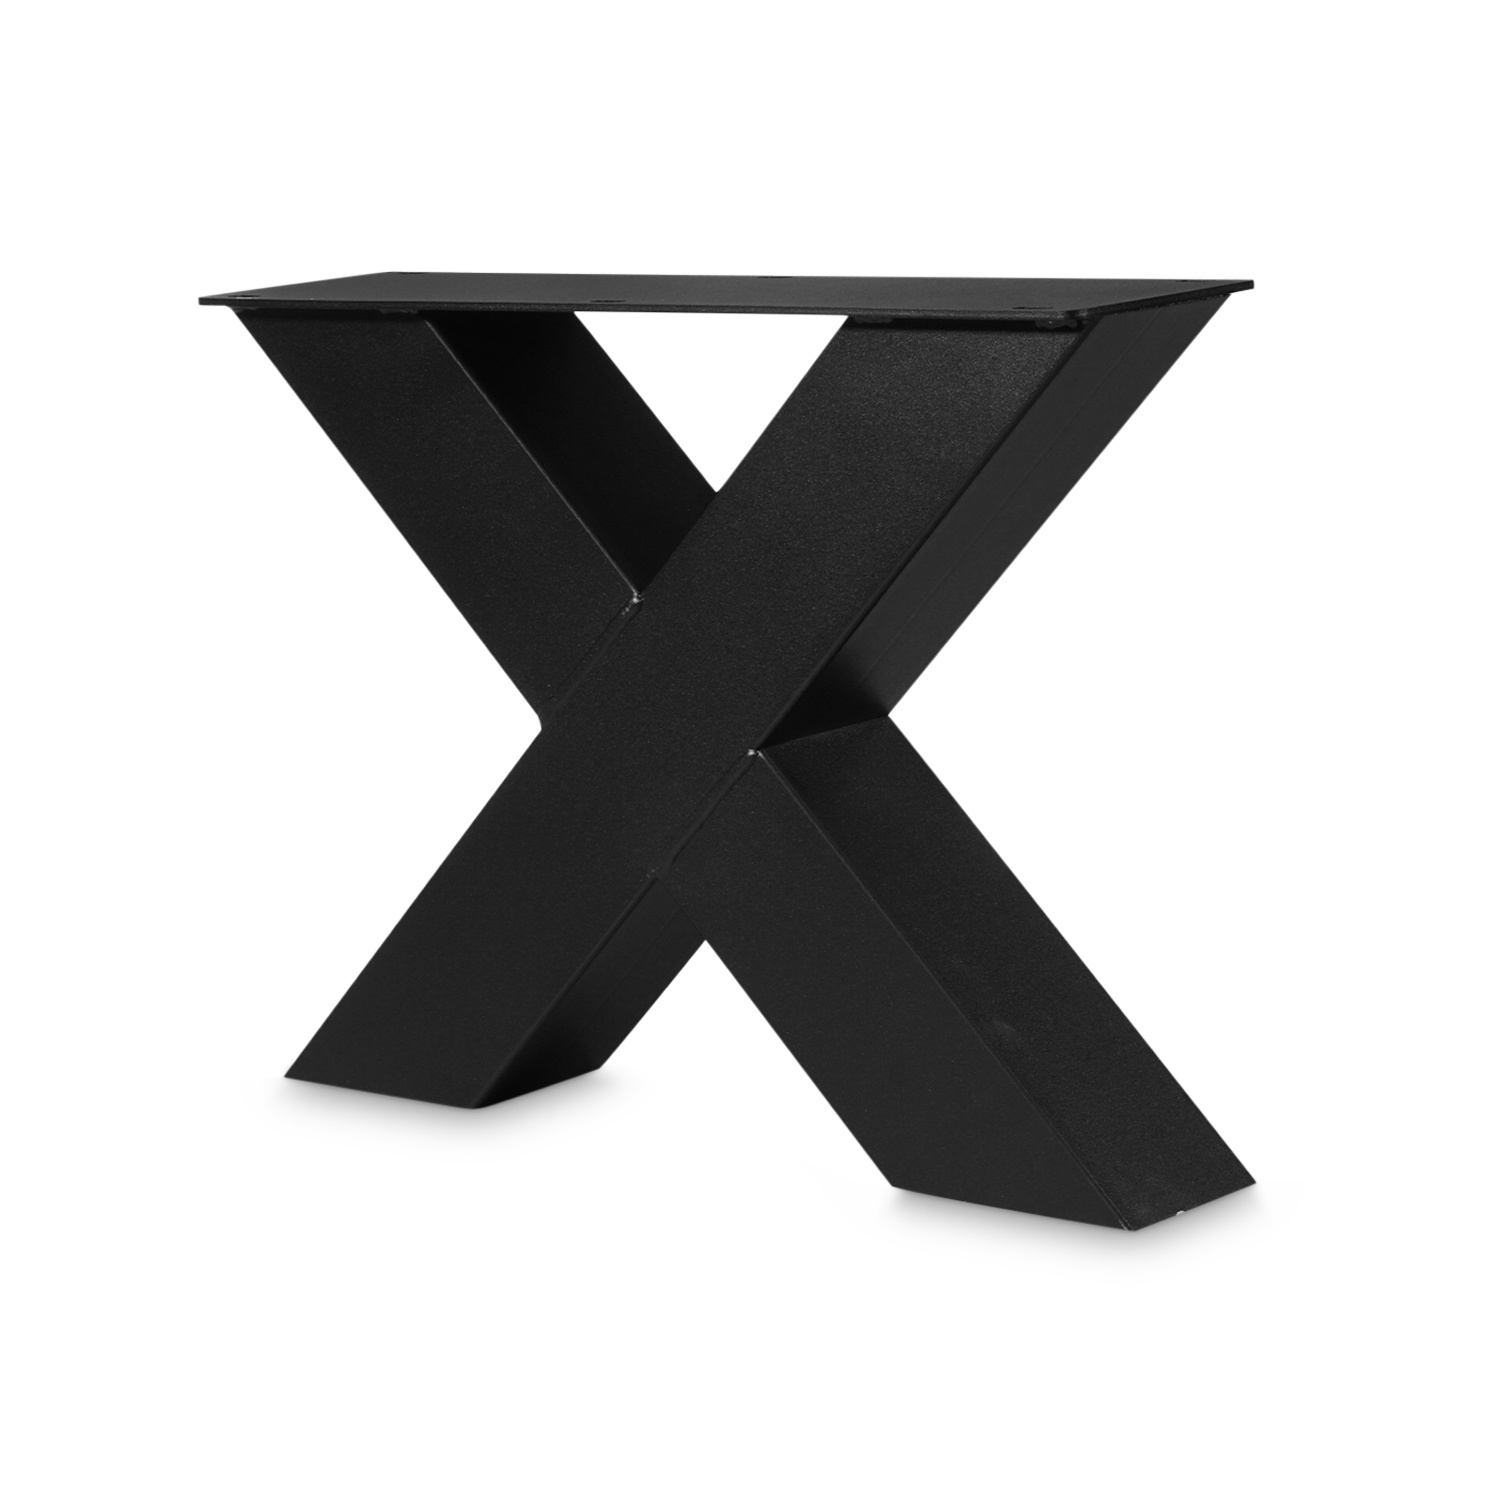  Stalen X-poten salontafel (SET) 10x10 cm - 56 cm breed - 41 cm hoog - X-salontafel / bijzettafel poten - GEPOEDERCOAT zwart